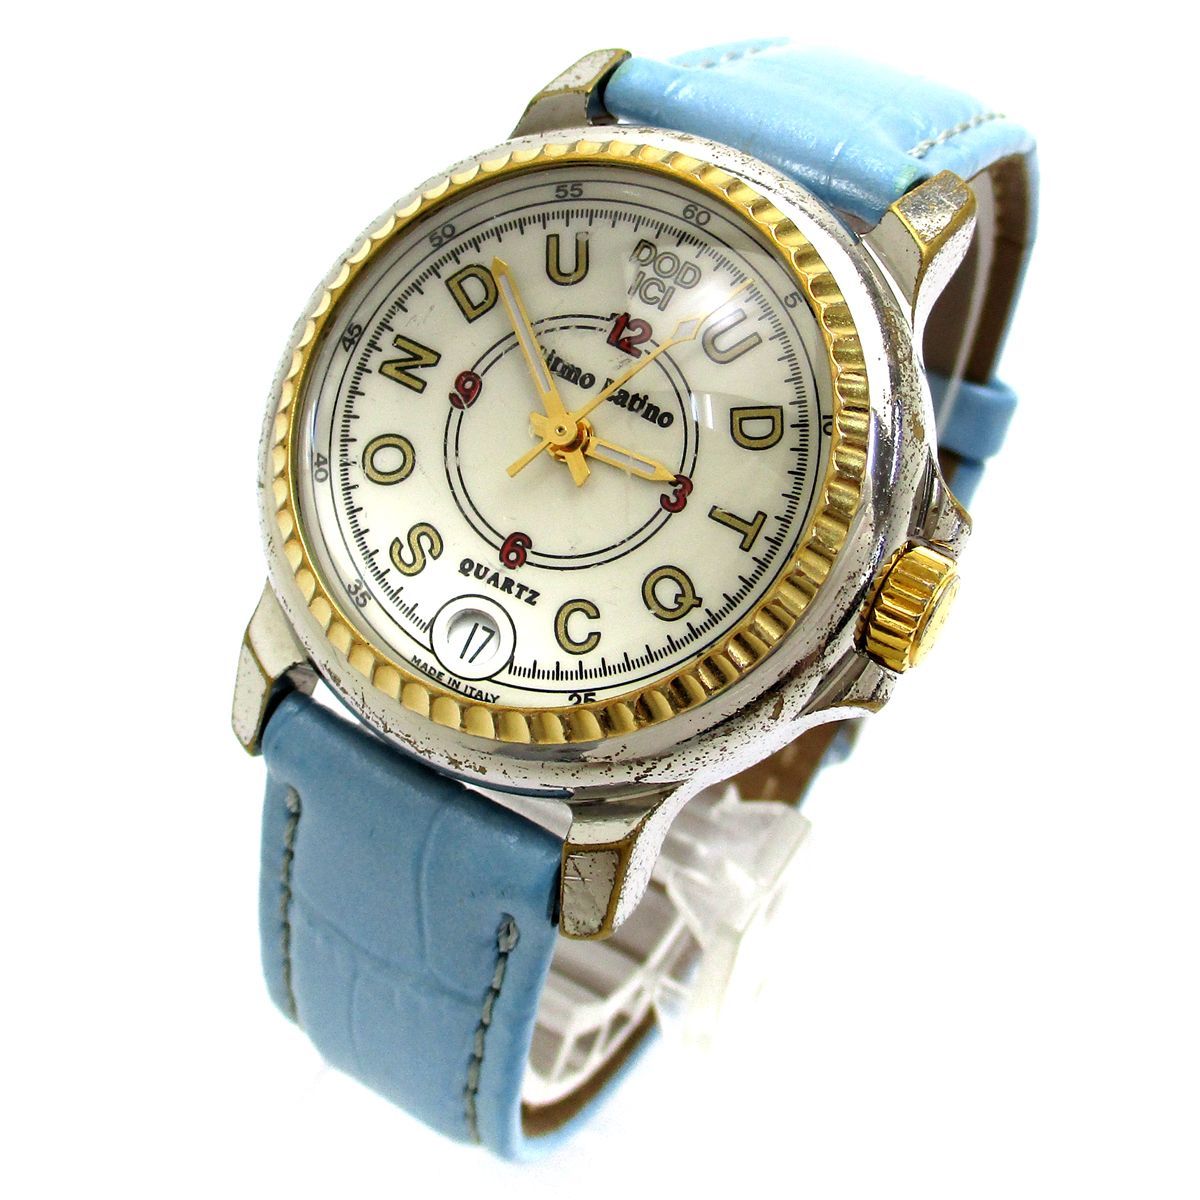 リトモラティーノ 時計 ドーディッチ ユニセックス 白文字盤 腕時計